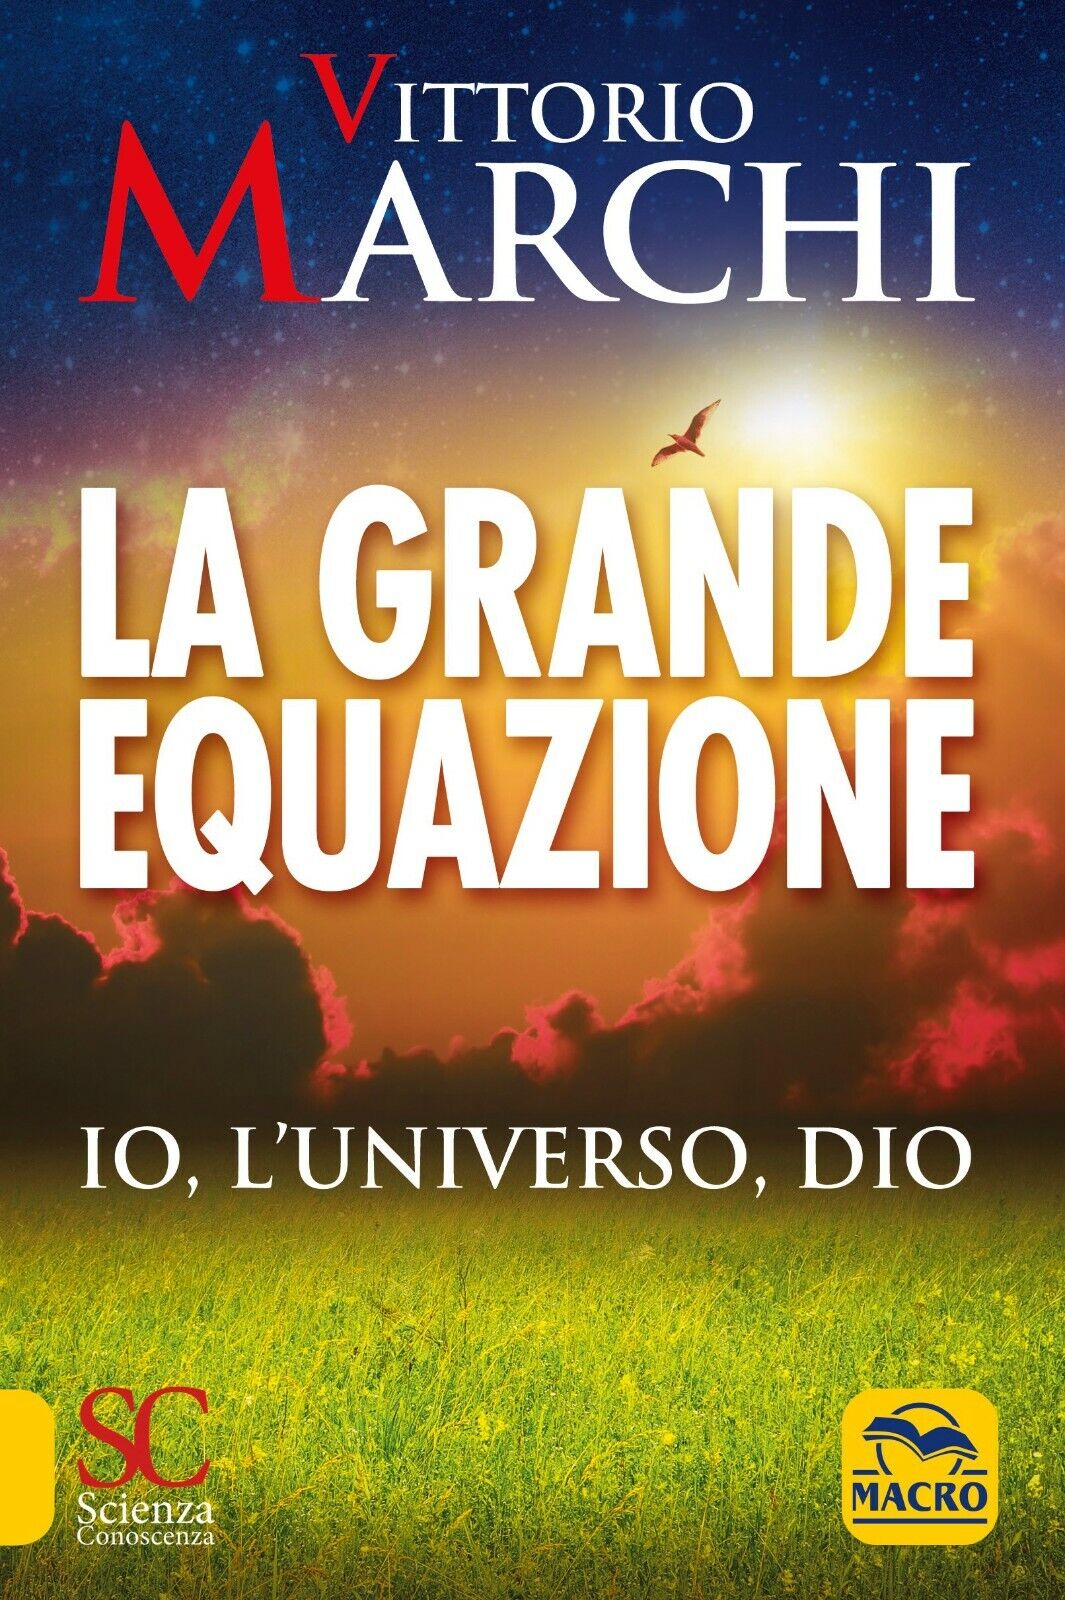 La grande equazione. Io, L'universo, Dio di Vittorio Marchi,  2021,  Macro Edizi